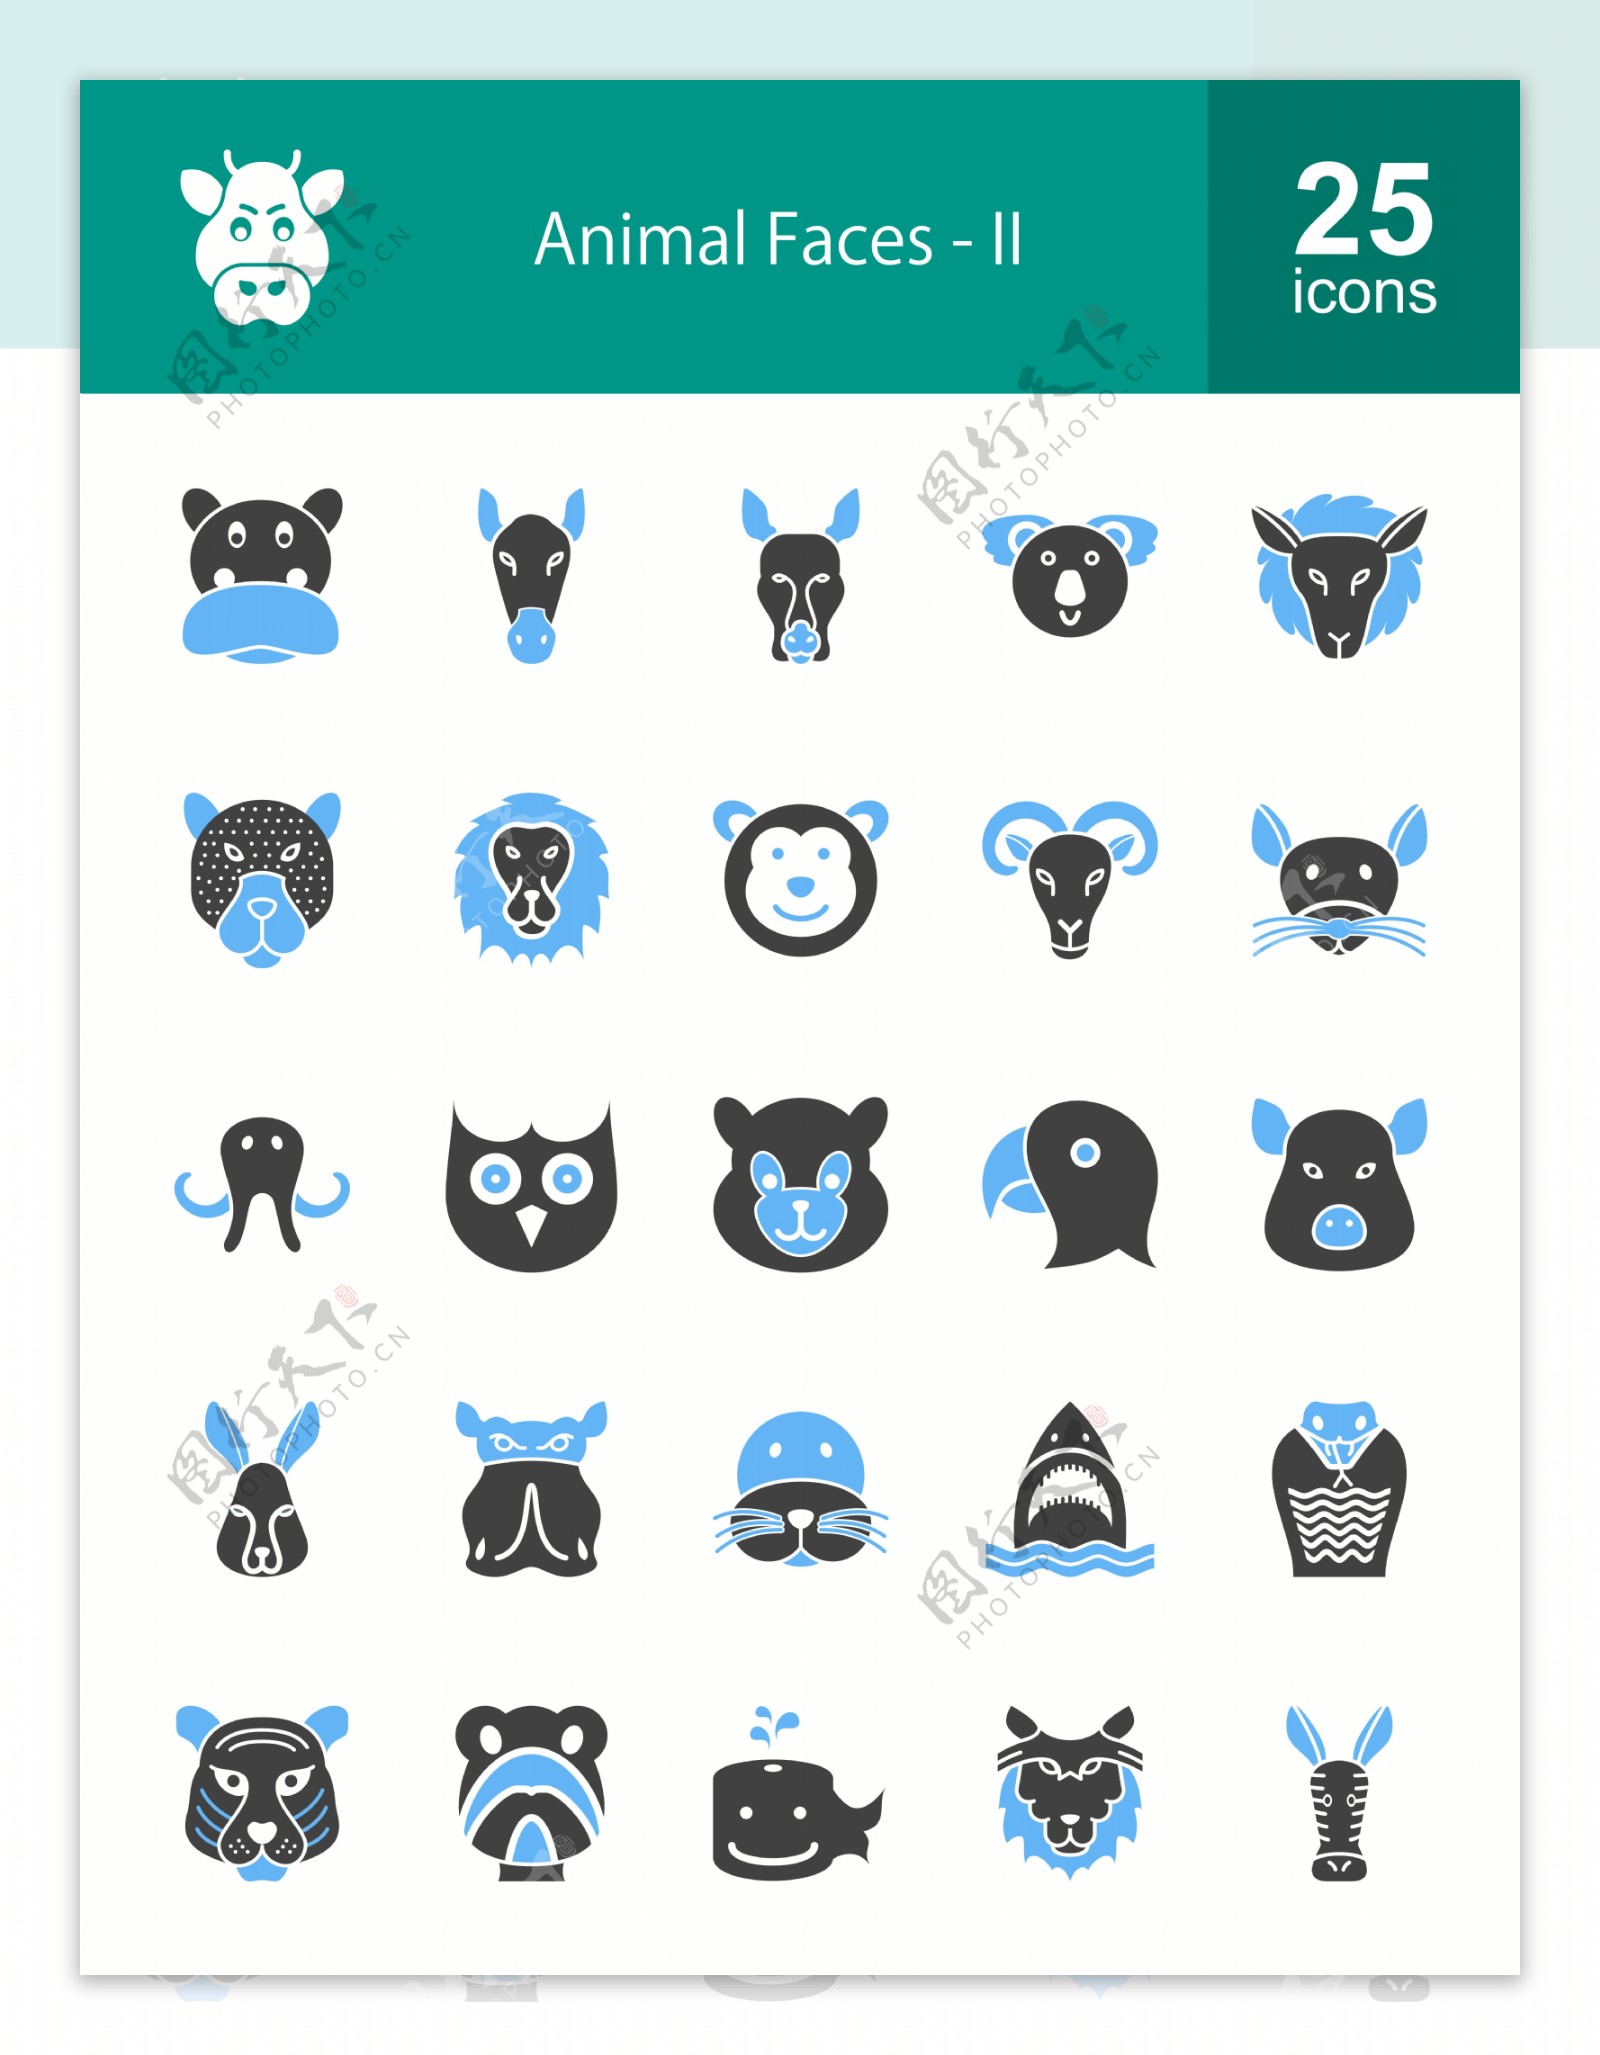 50个动物脸被填满了蓝色的黑色图标